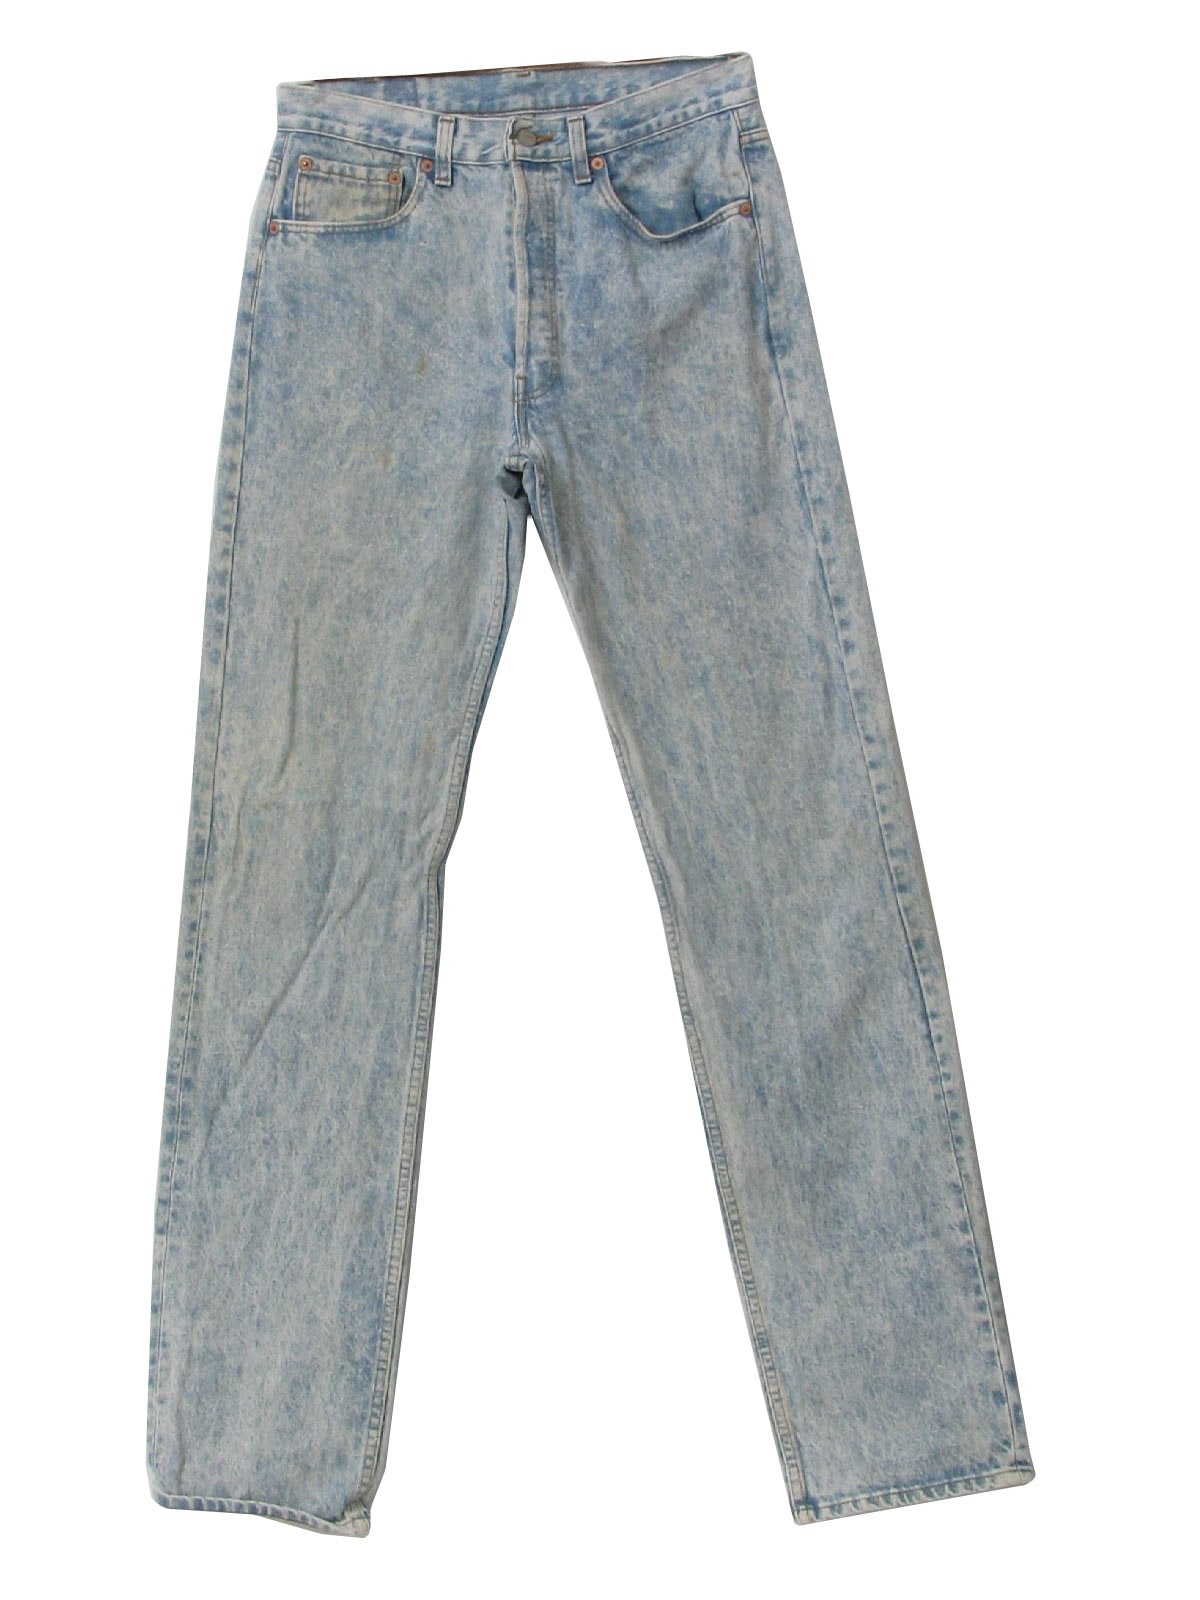 1990s Vintage Pants: 90s -Levis 501- Mens almost white, light blue acid ...